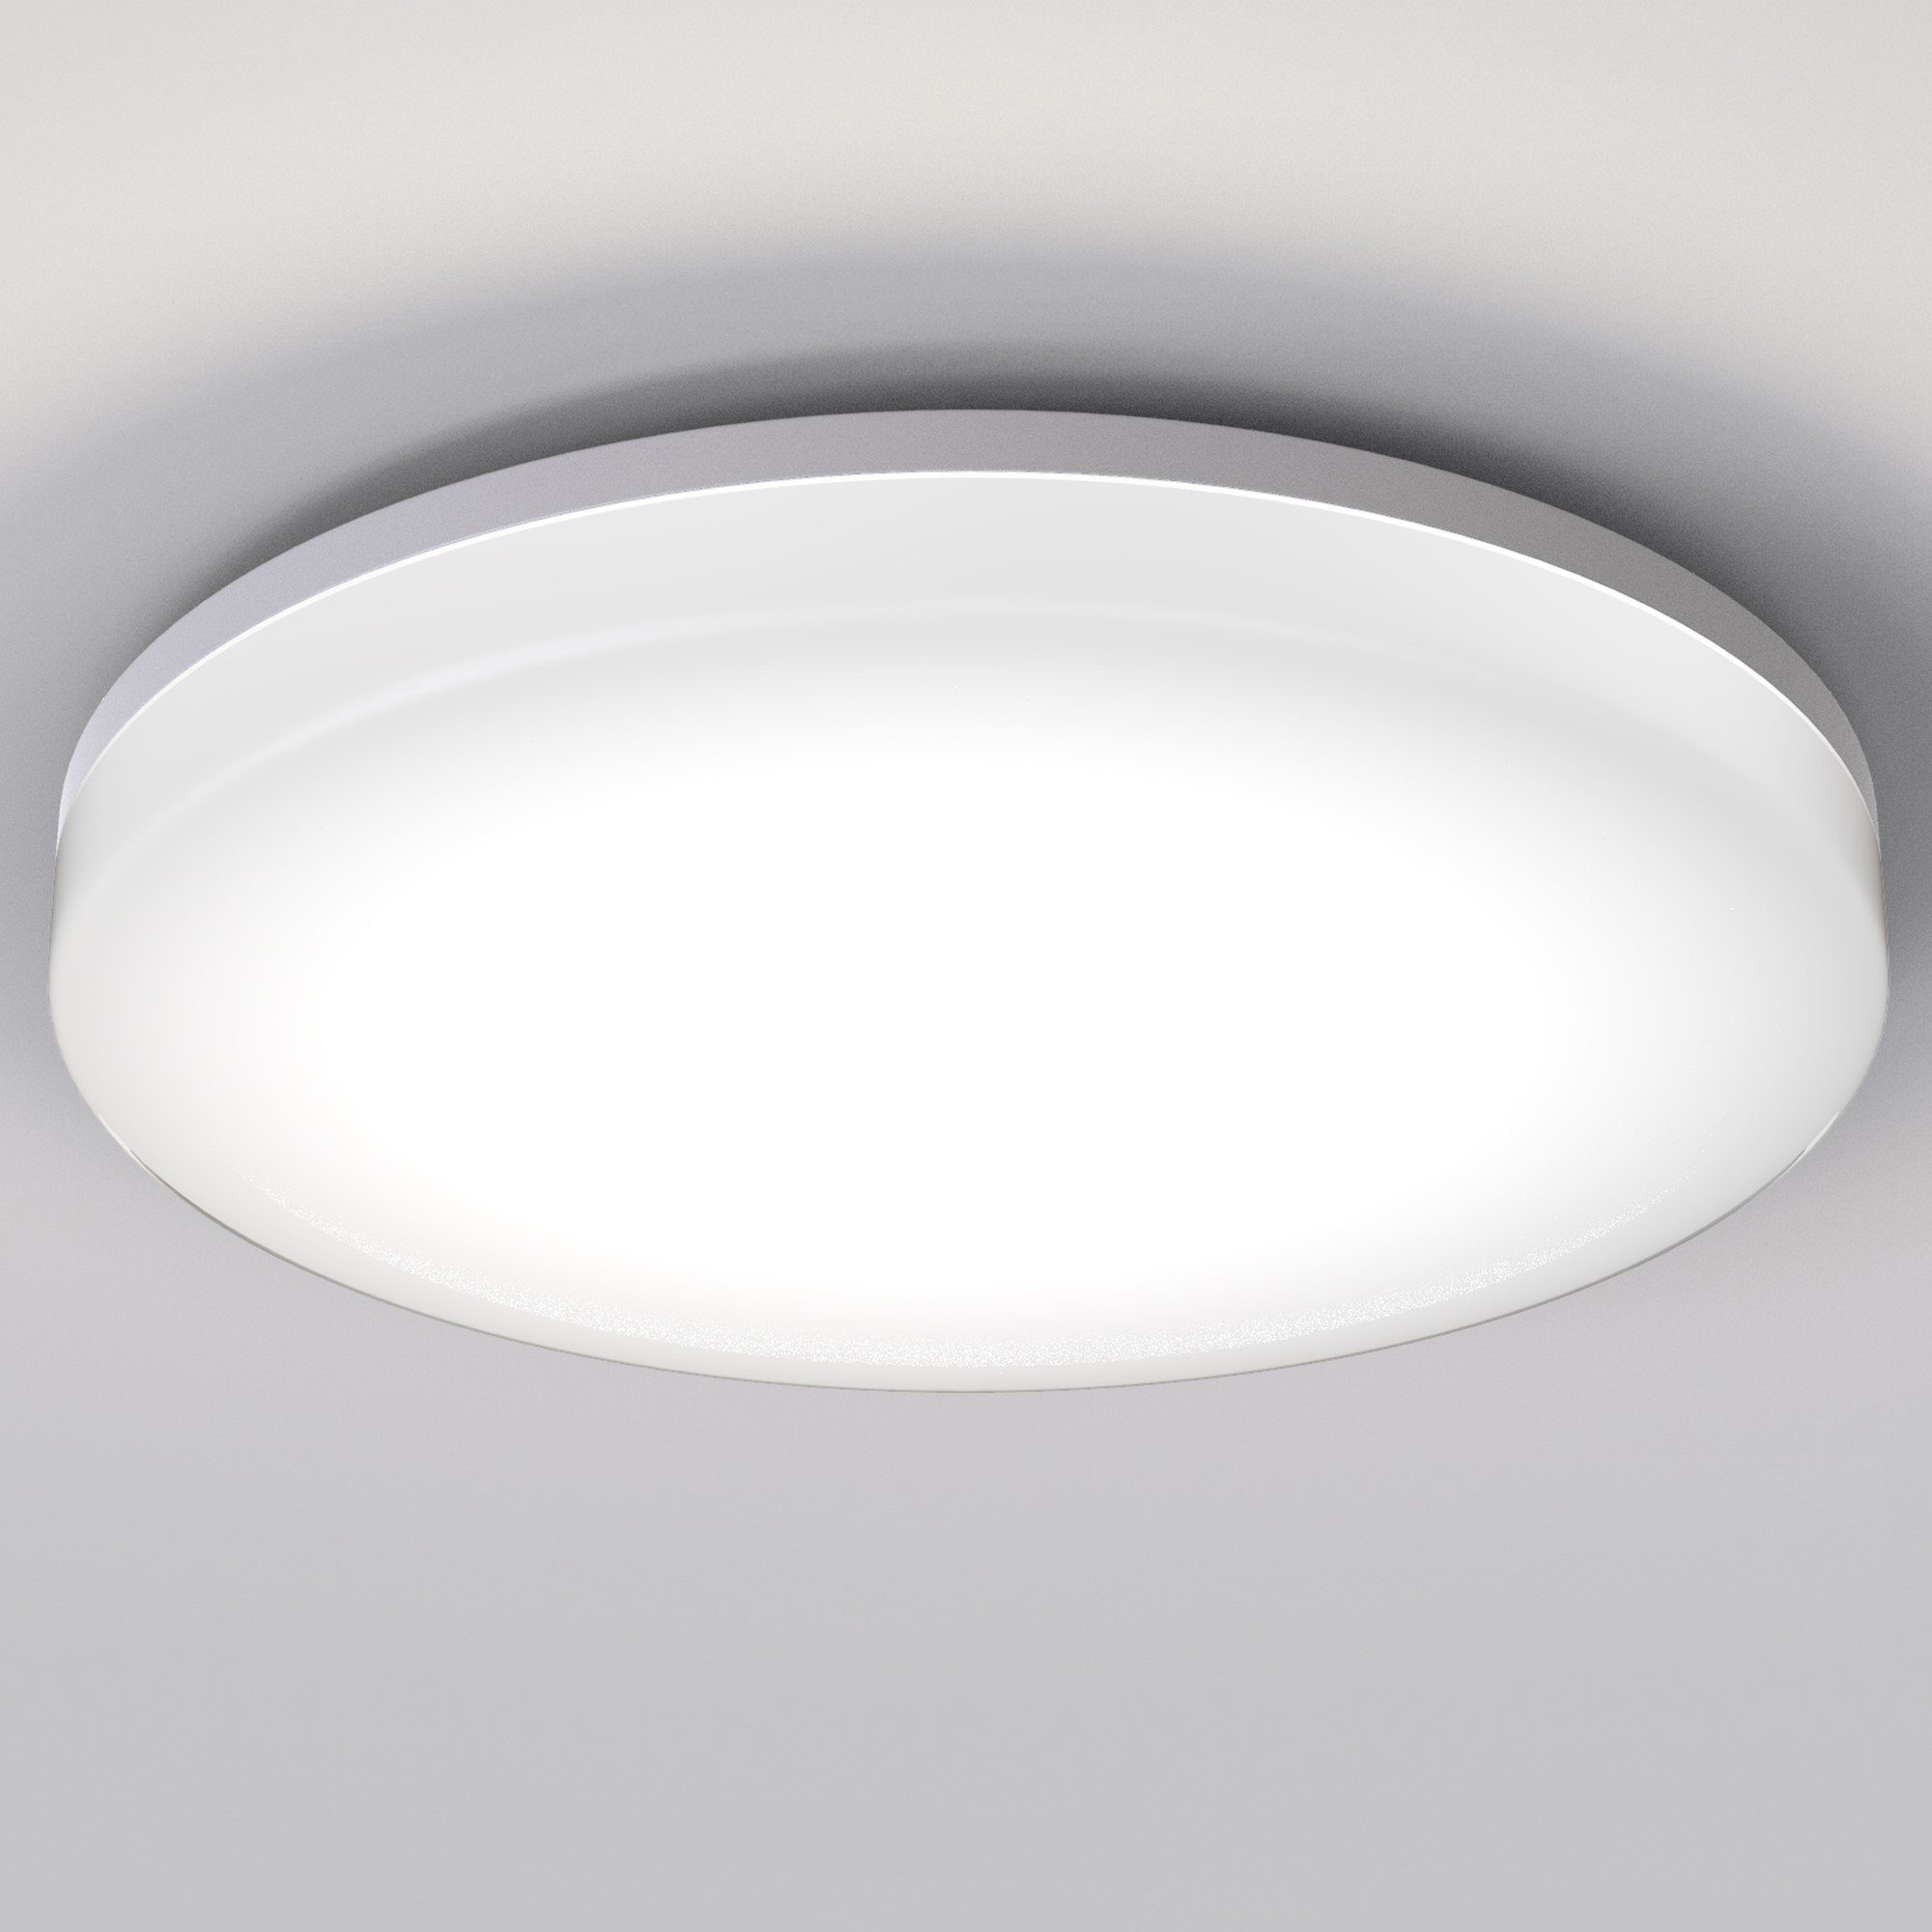 LED Decken-Lampe Wohn-Zimmer Beleuchtung Büro Flur Bad Glas Leuchte Küchen Licht 